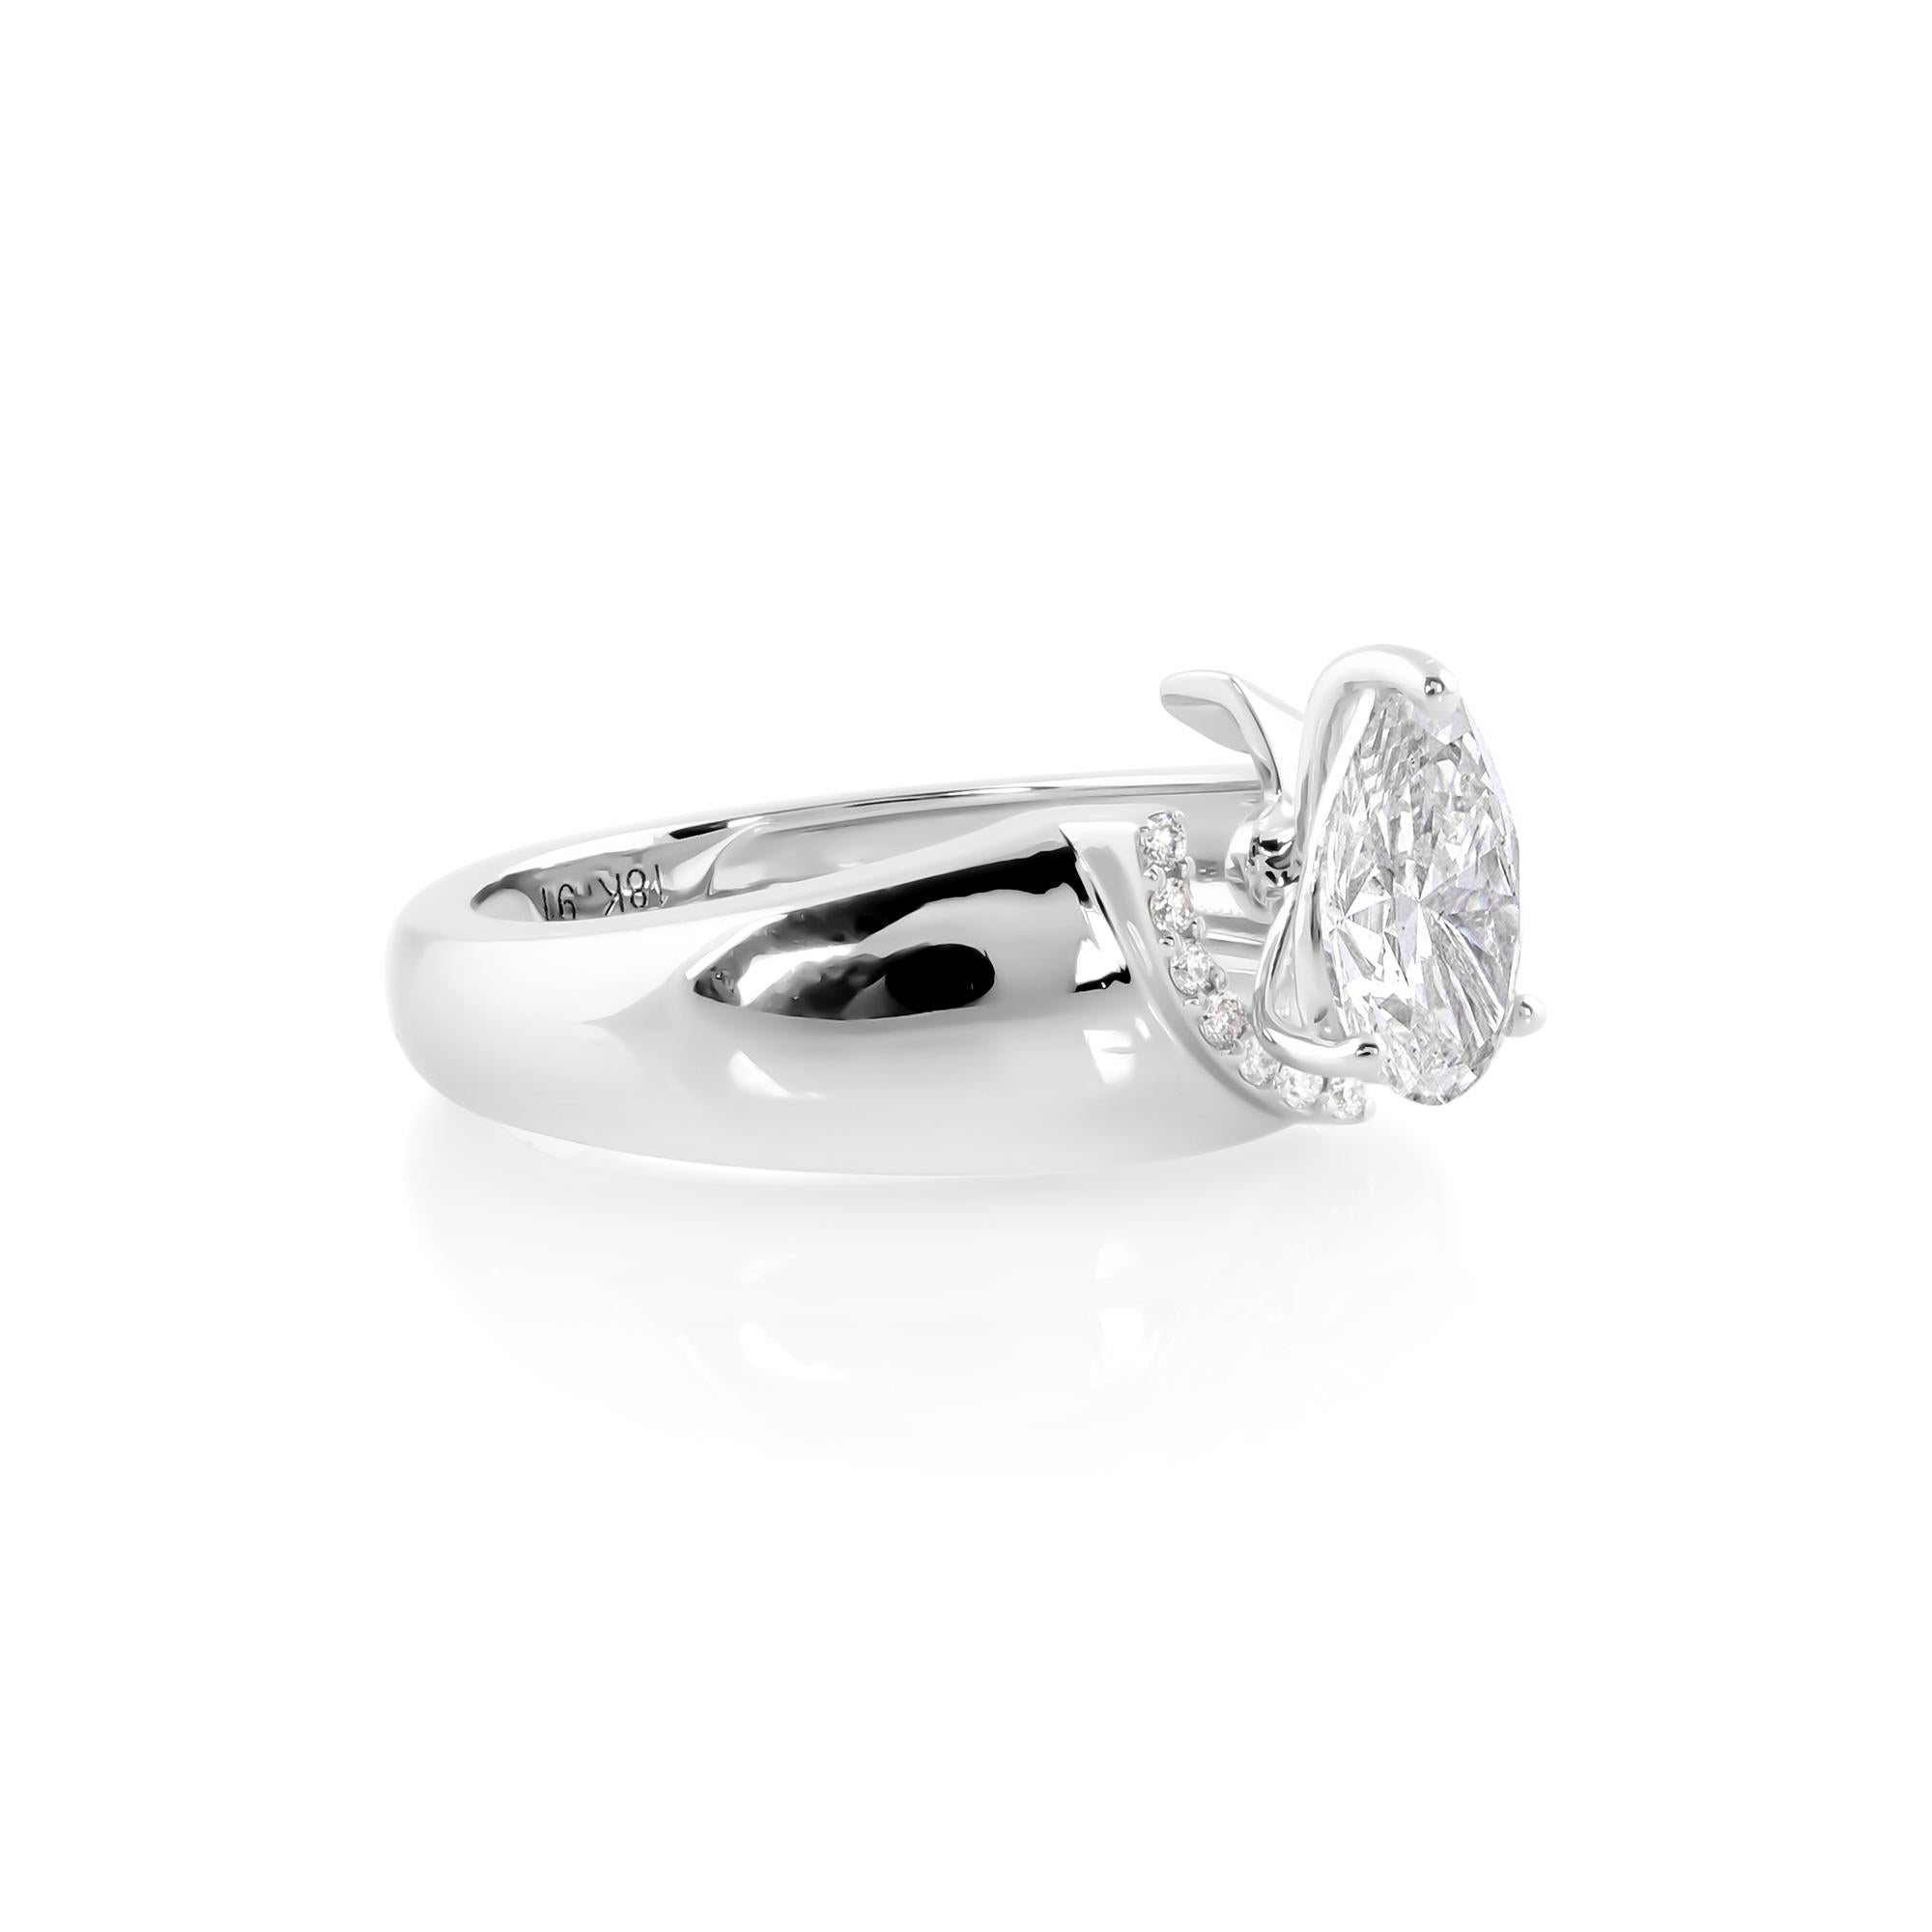 La simplicité du design permet à la beauté naturelle du diamant de briller, faisant de cette bague le choix parfait pour ceux qui apprécient l'élégance discrète et la sophistication intemporelle. Qu'elle soit portée comme bague de fiançailles,